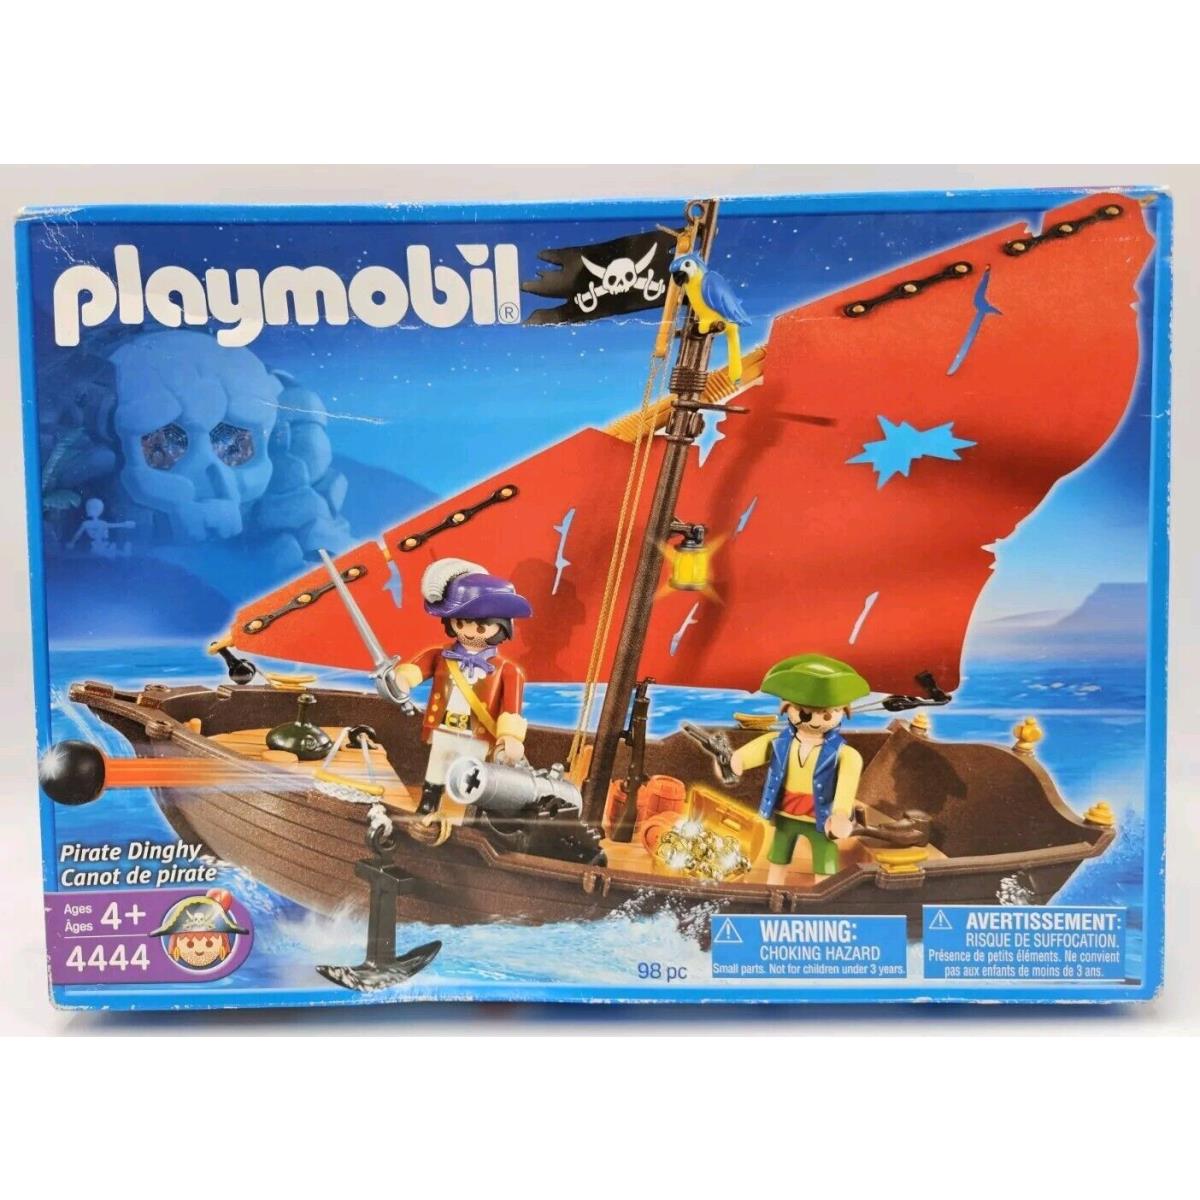 with Some Box Wear Playmobil 4444 Pirate Dinghy 2007 Geobra